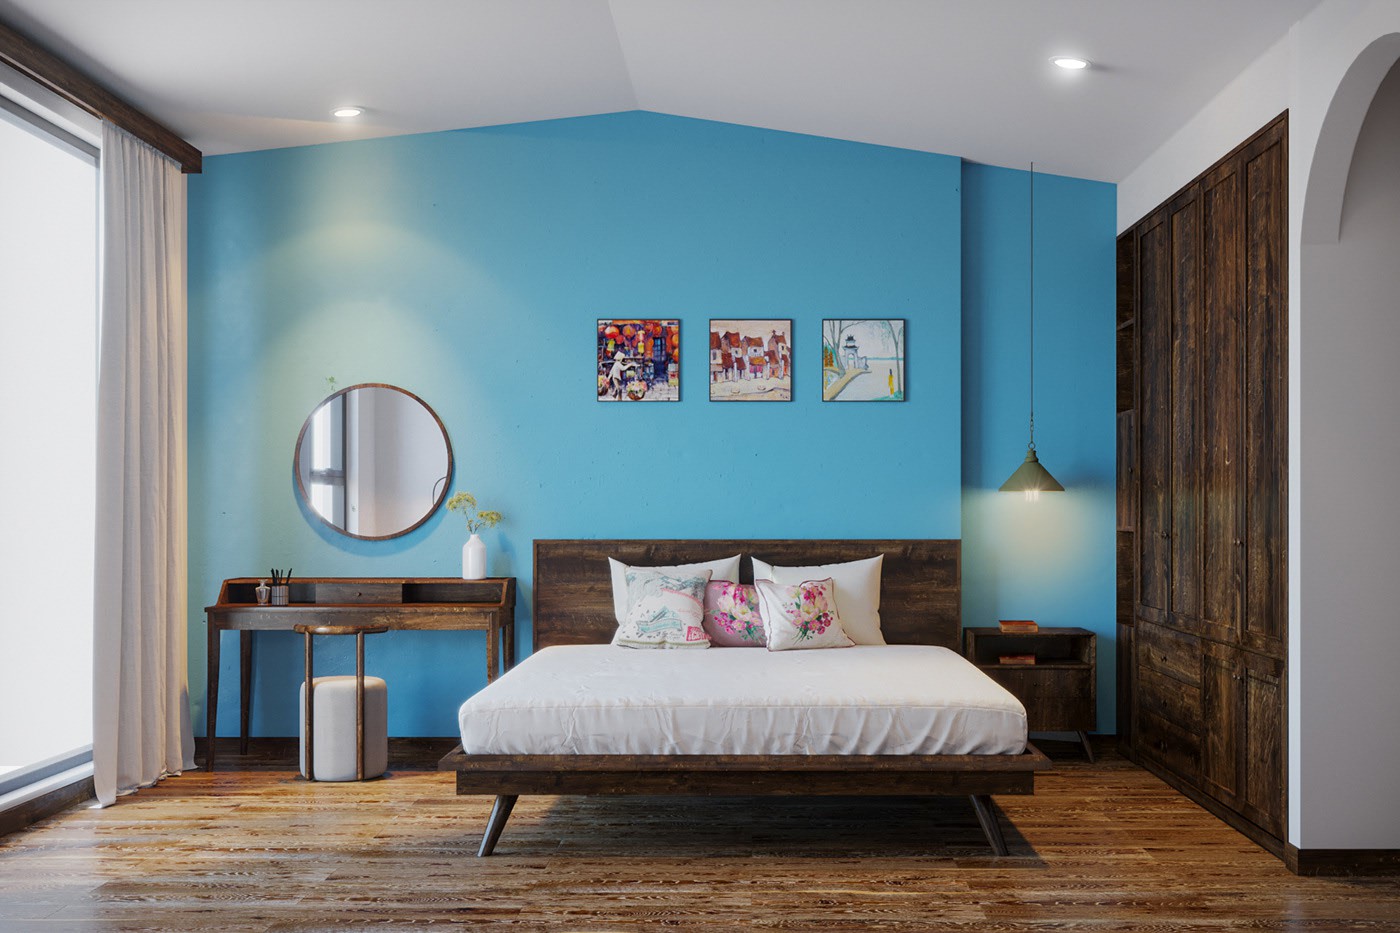 Hình ảnh phòng ngủ của trẻ với giường, tủ quần áo bằng gỗ, tường đầu giường sơn xanh dương, trang trí bằng gương tròn, tranh ảnh, cạnh đó là bàn trang điểm